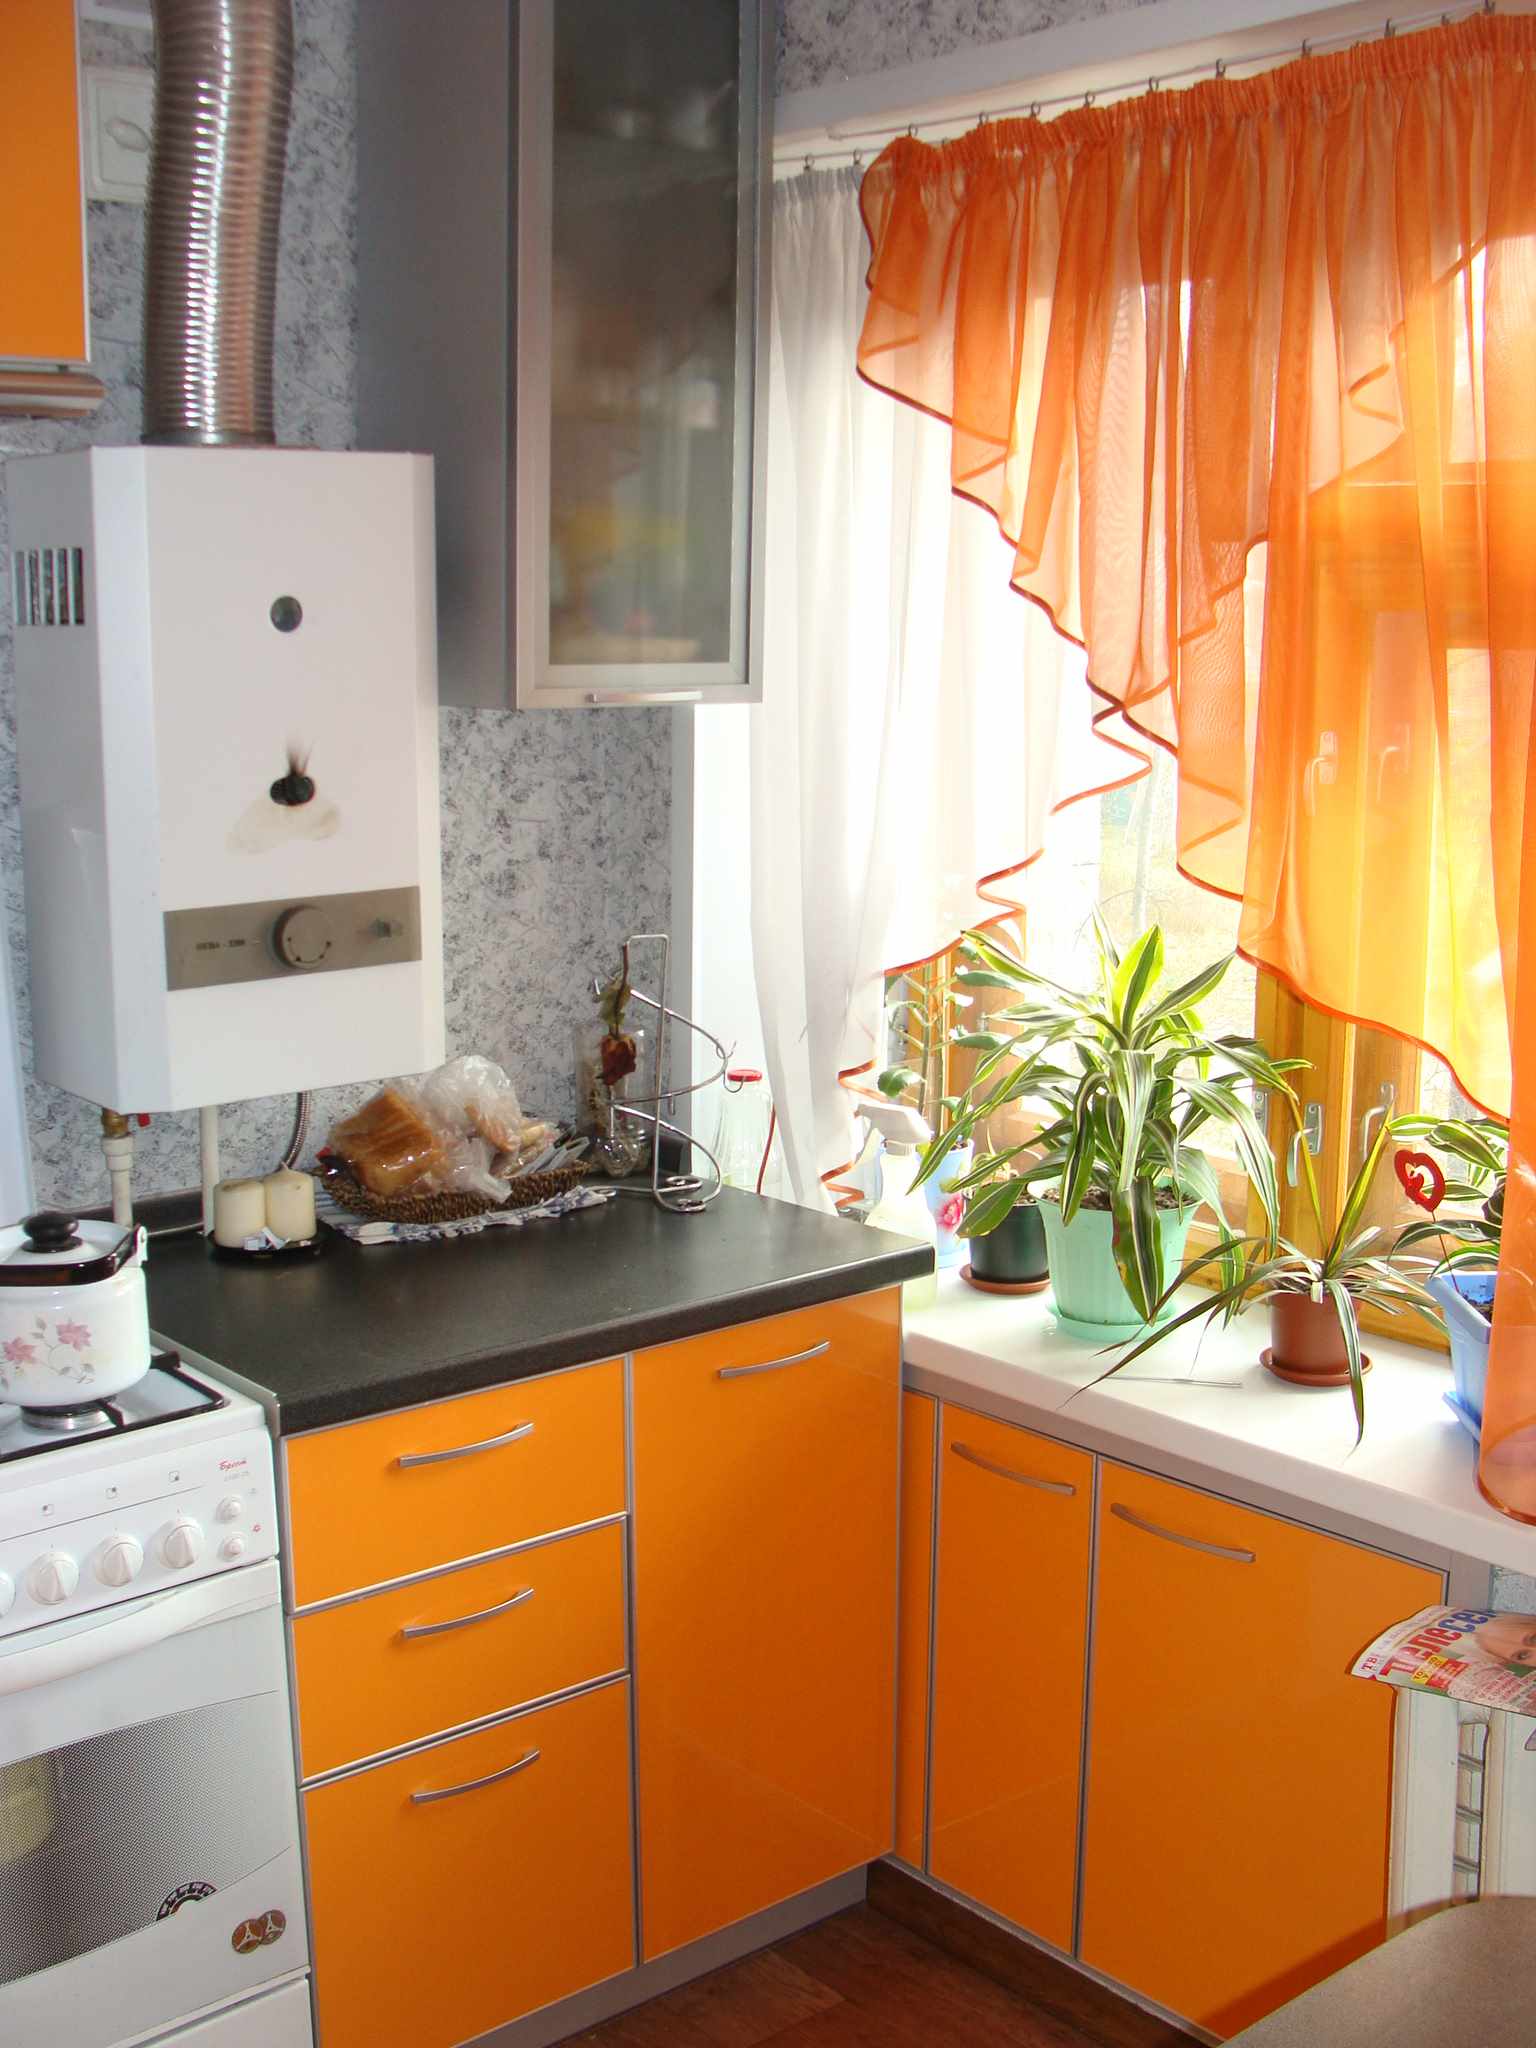 Um exemplo de um belo interior de cozinha com caldeira a gás